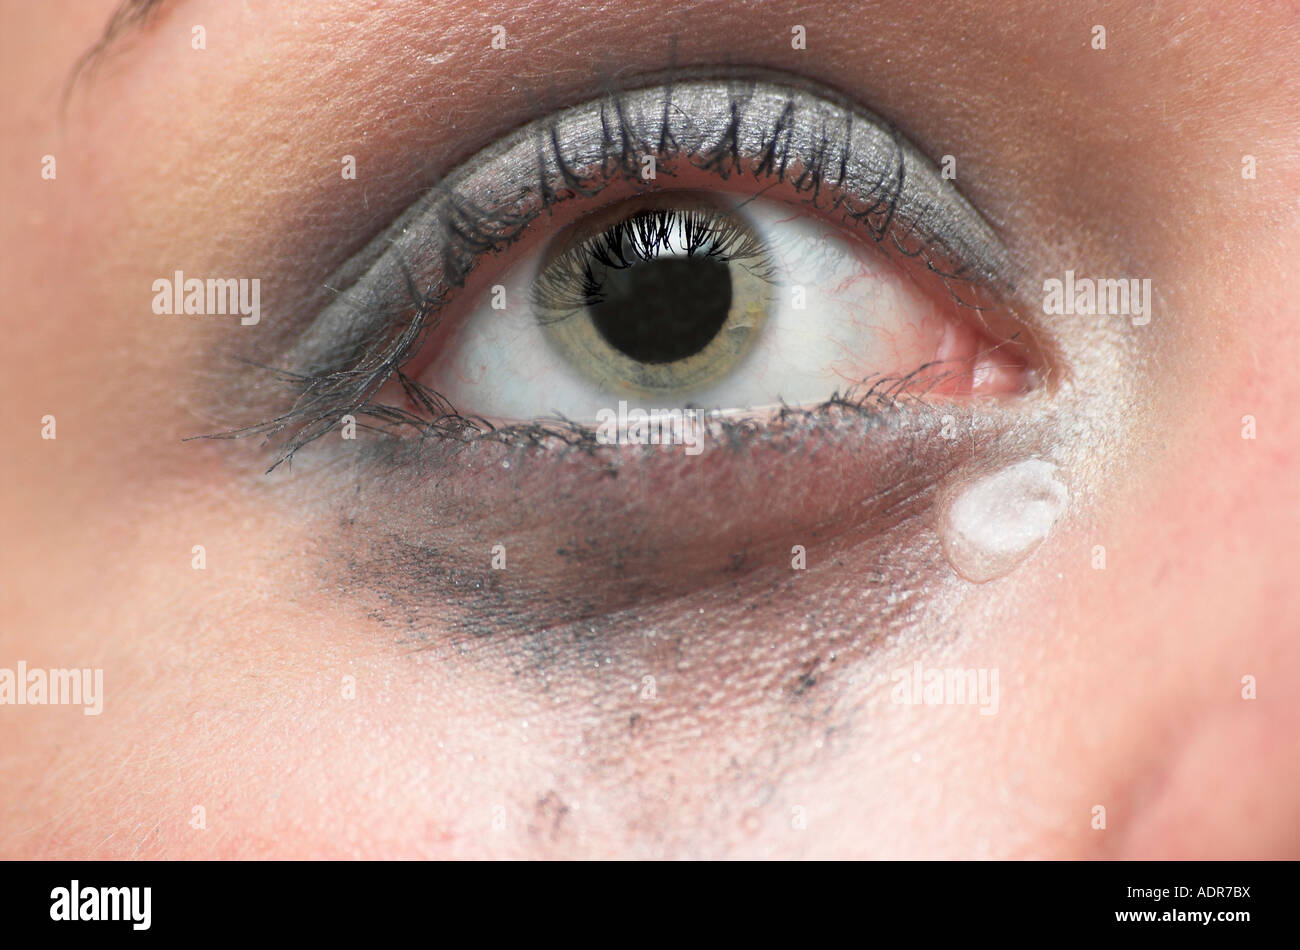 Junge Frau mit Augen-Make up Wange Träne im Augenwinkel liefen weinend hautnah Stockfoto